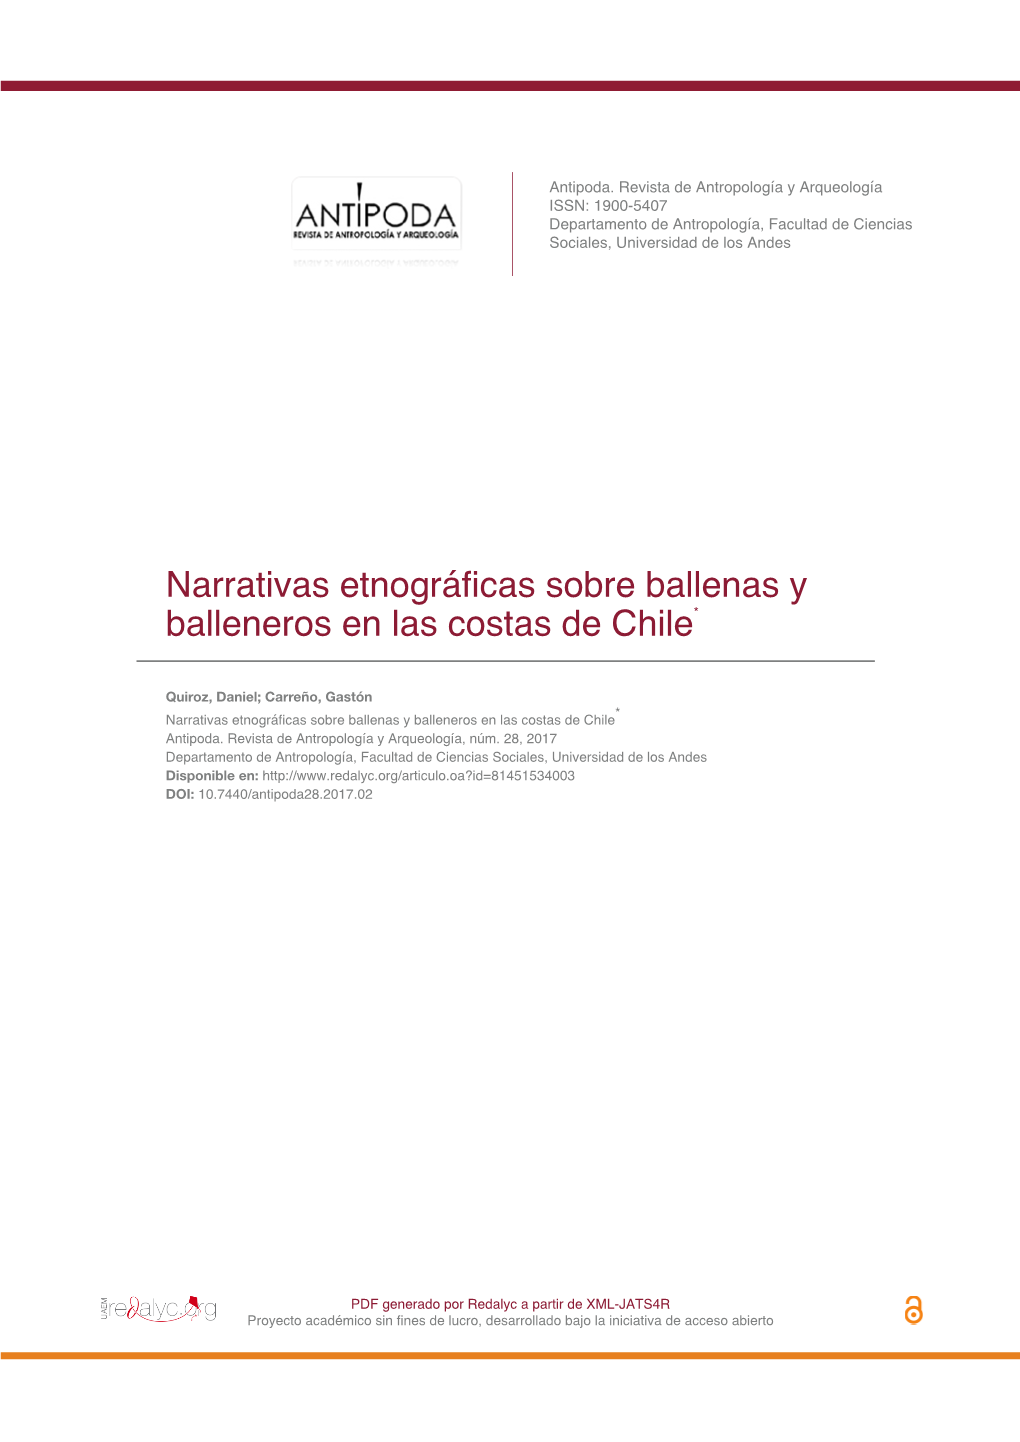 Narrativas Etnográficas Sobre Ballenas Y Balleneros En Las Costas De Chile*